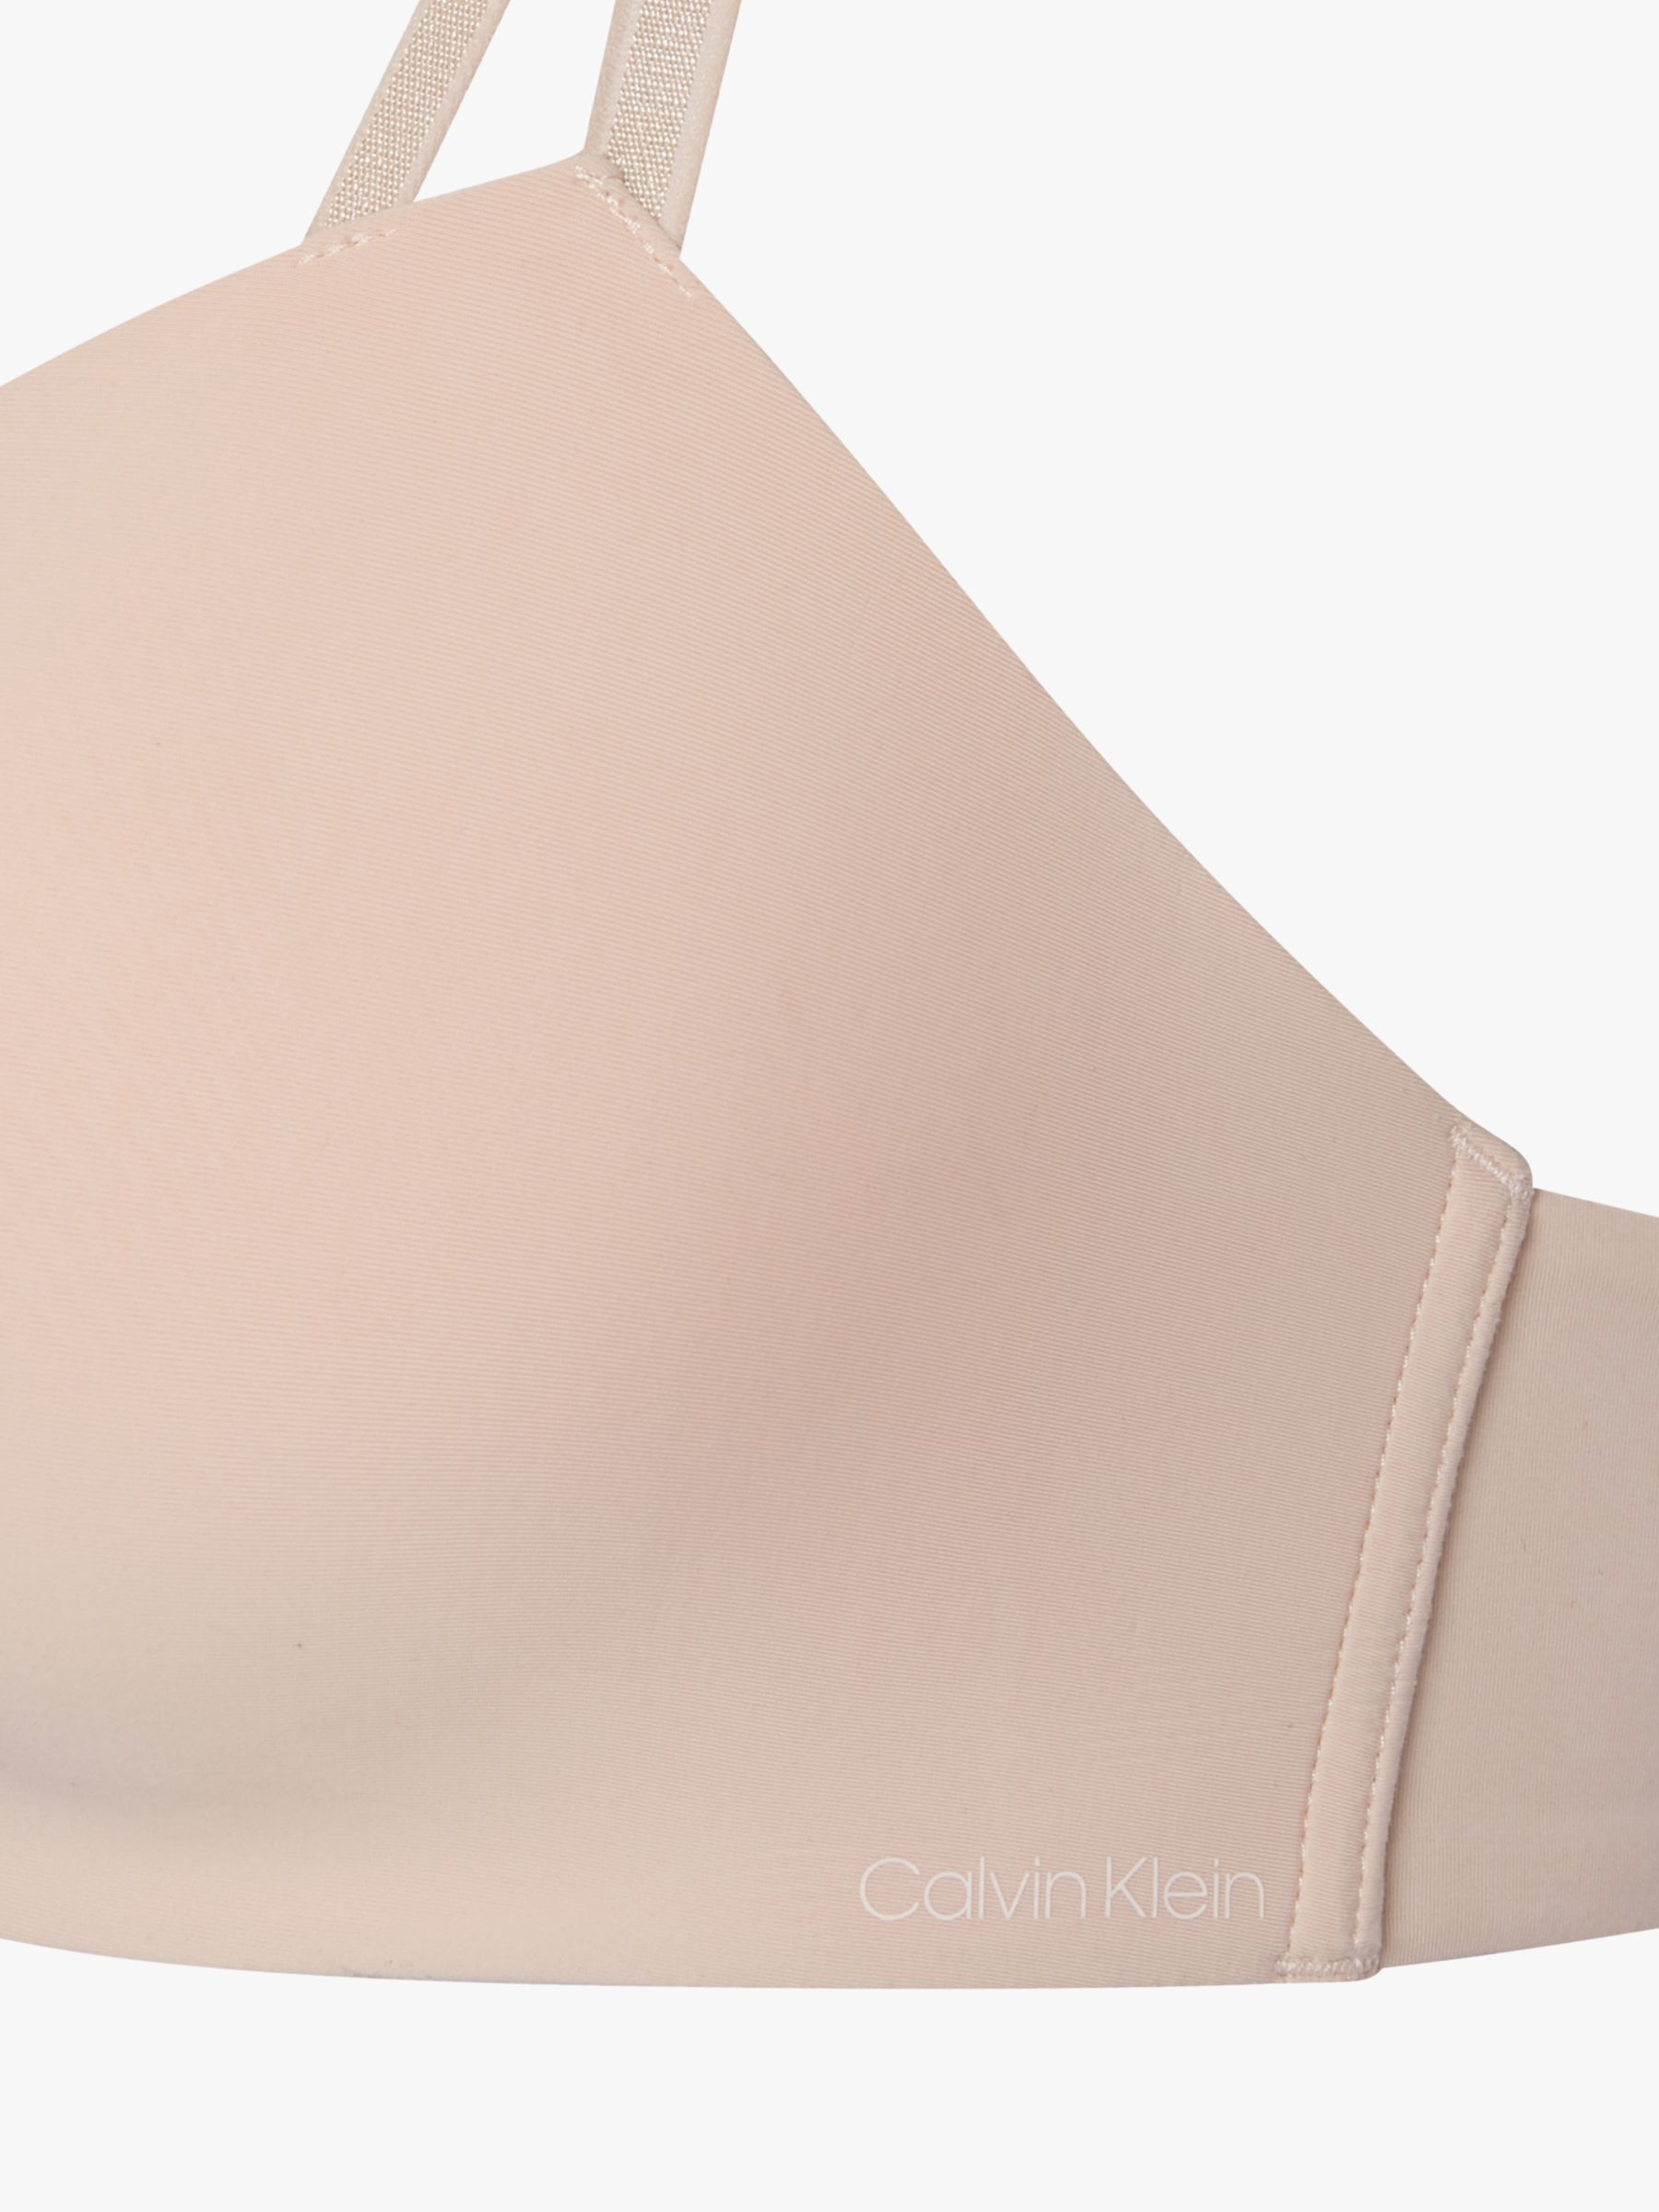 Push-Up Bra - Seductive Comfort Calvin Klein®